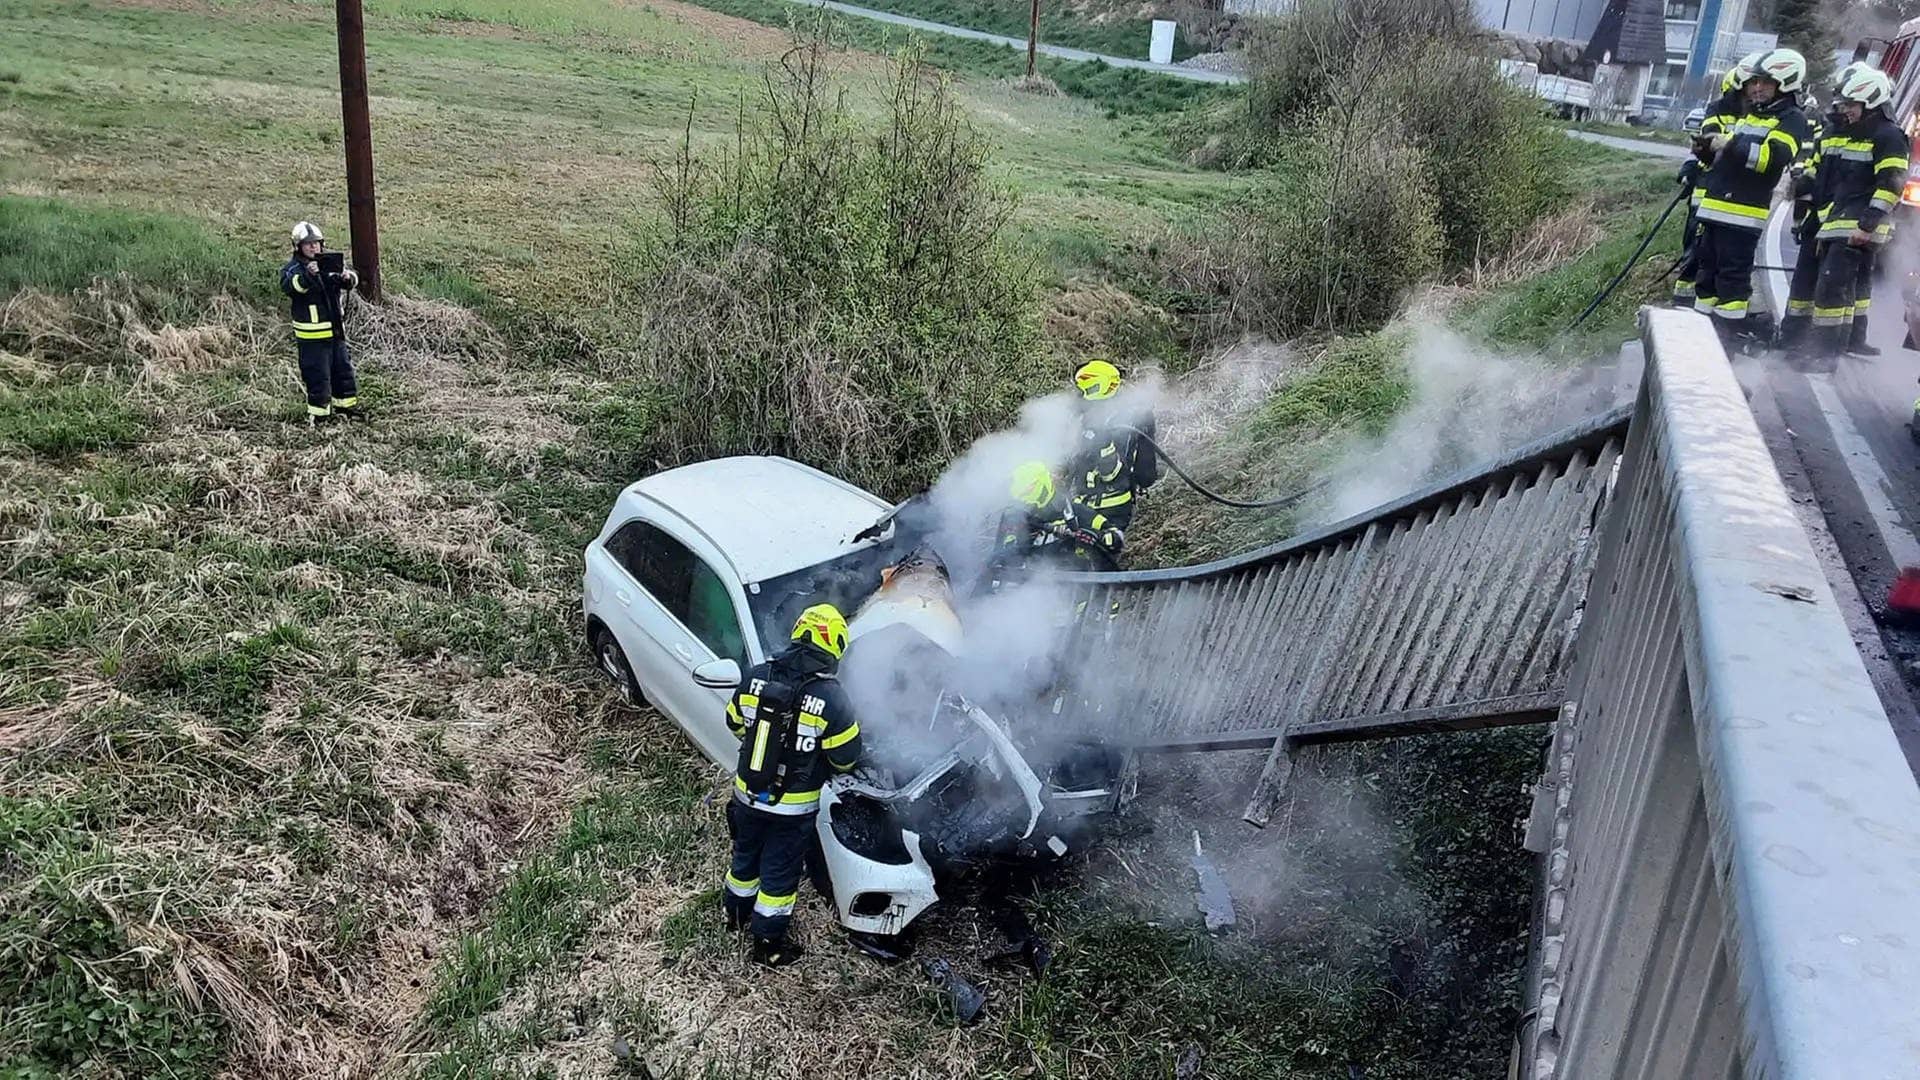 Feuerwehrleute der Freiwilligen Feuerwehr Preding löschen den Brand eines verunfallten Pkw nach dem schweren Autounfall in Hengsberg (Bezirk Leibnitz) in der Steiermark.